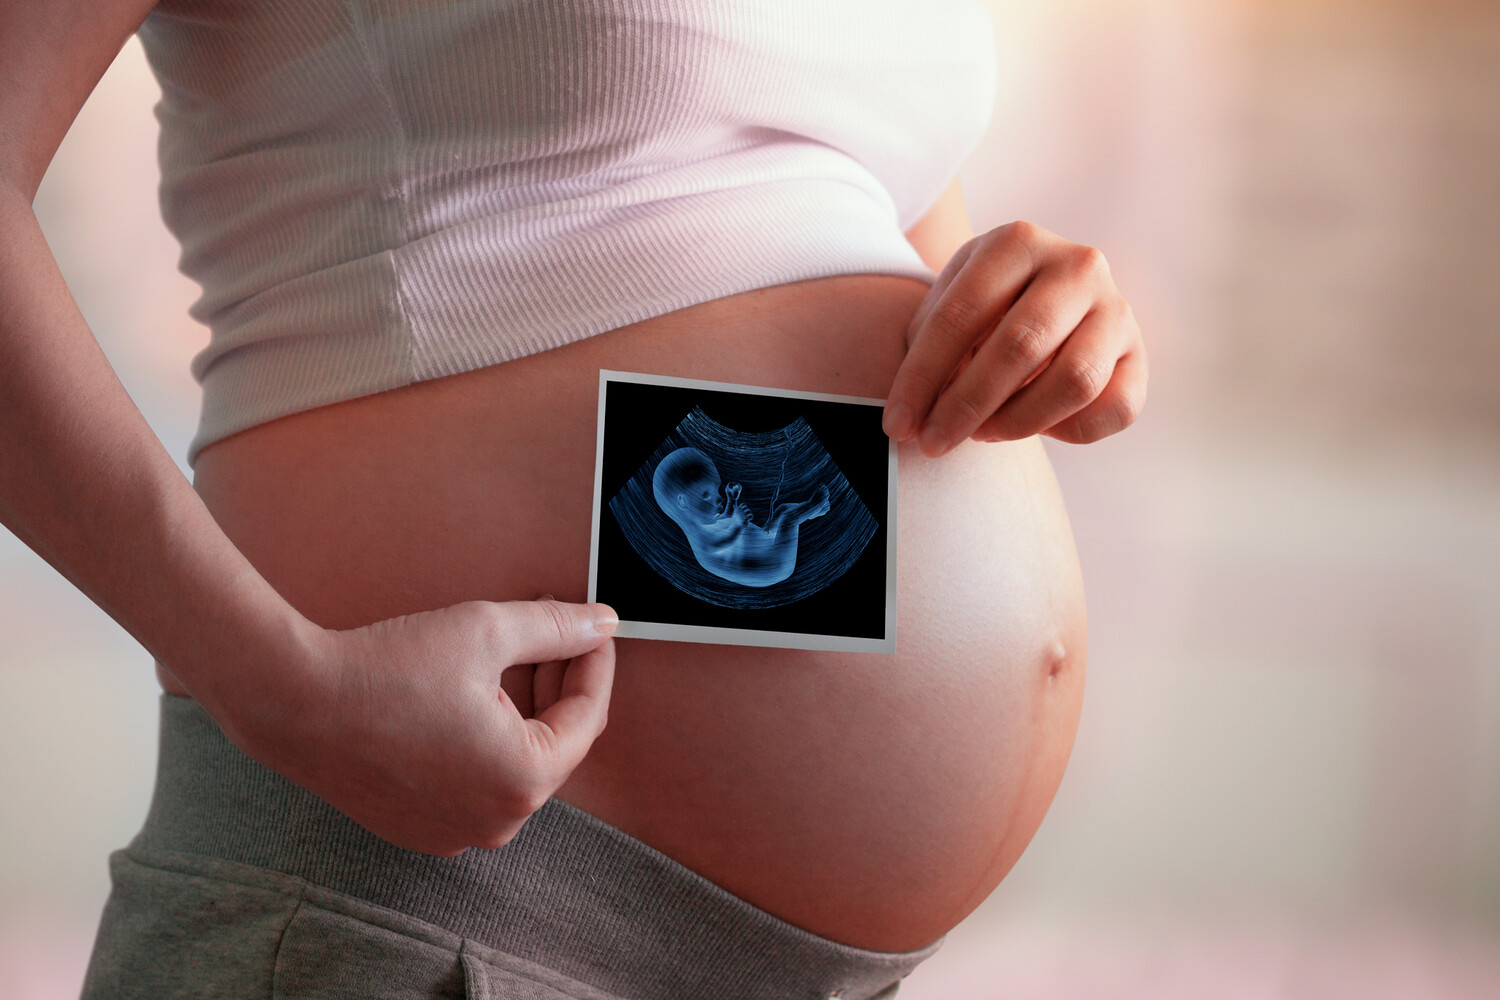 31 неделя беременности: ощущения, вес и развитие плода | Тридцать первая неделя беременности